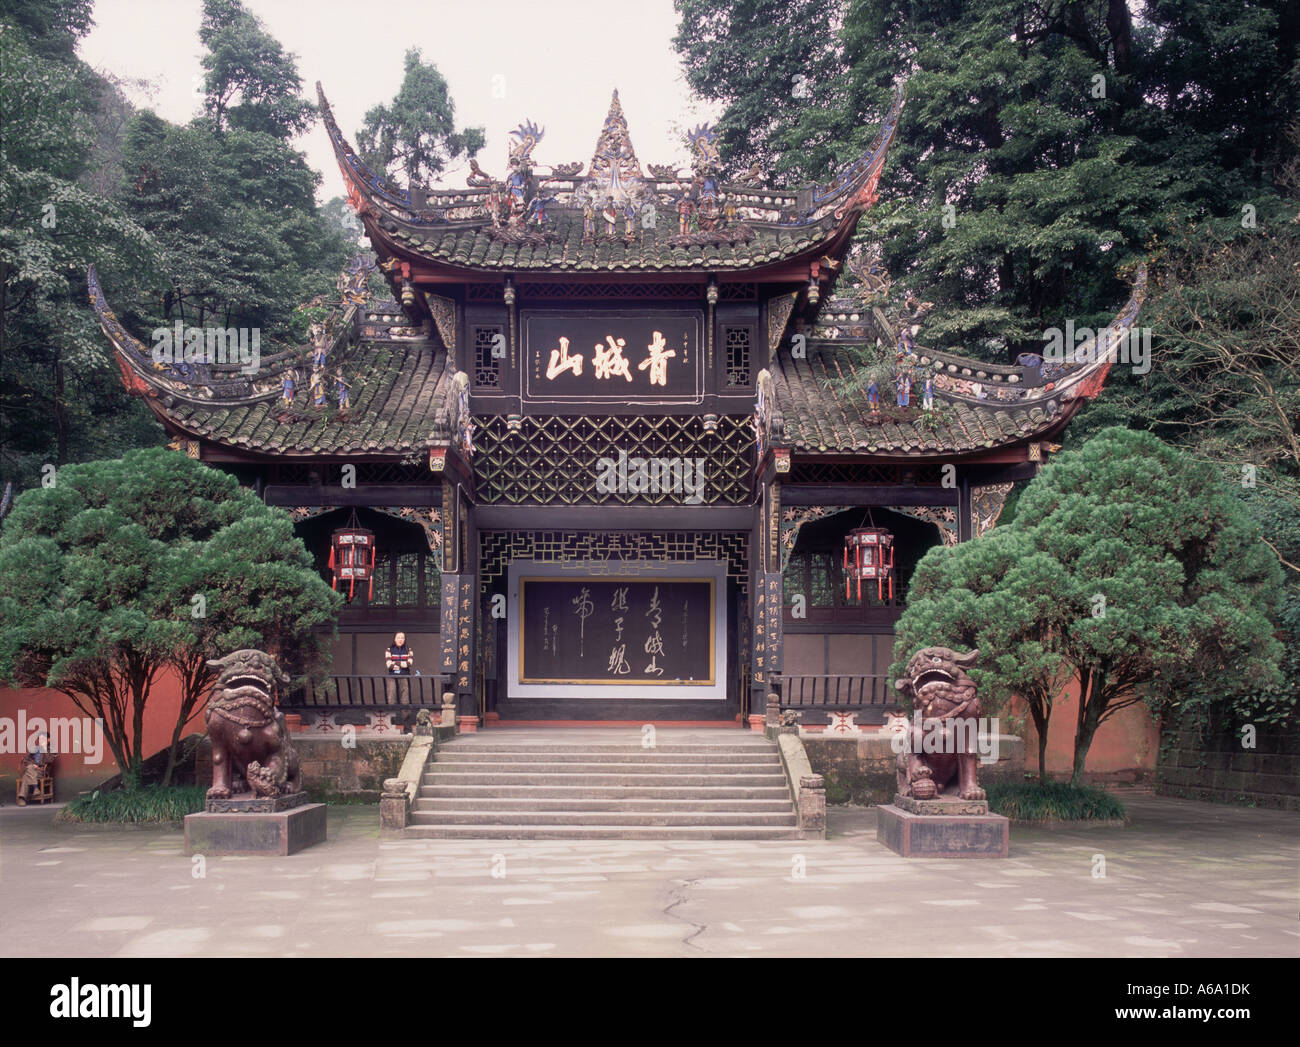 Cina, Qingcheng Shan (città verde montagna), ornati gateway anteriore al tempio di rinomato daoisti ritiro con gronda capovolta Foto Stock